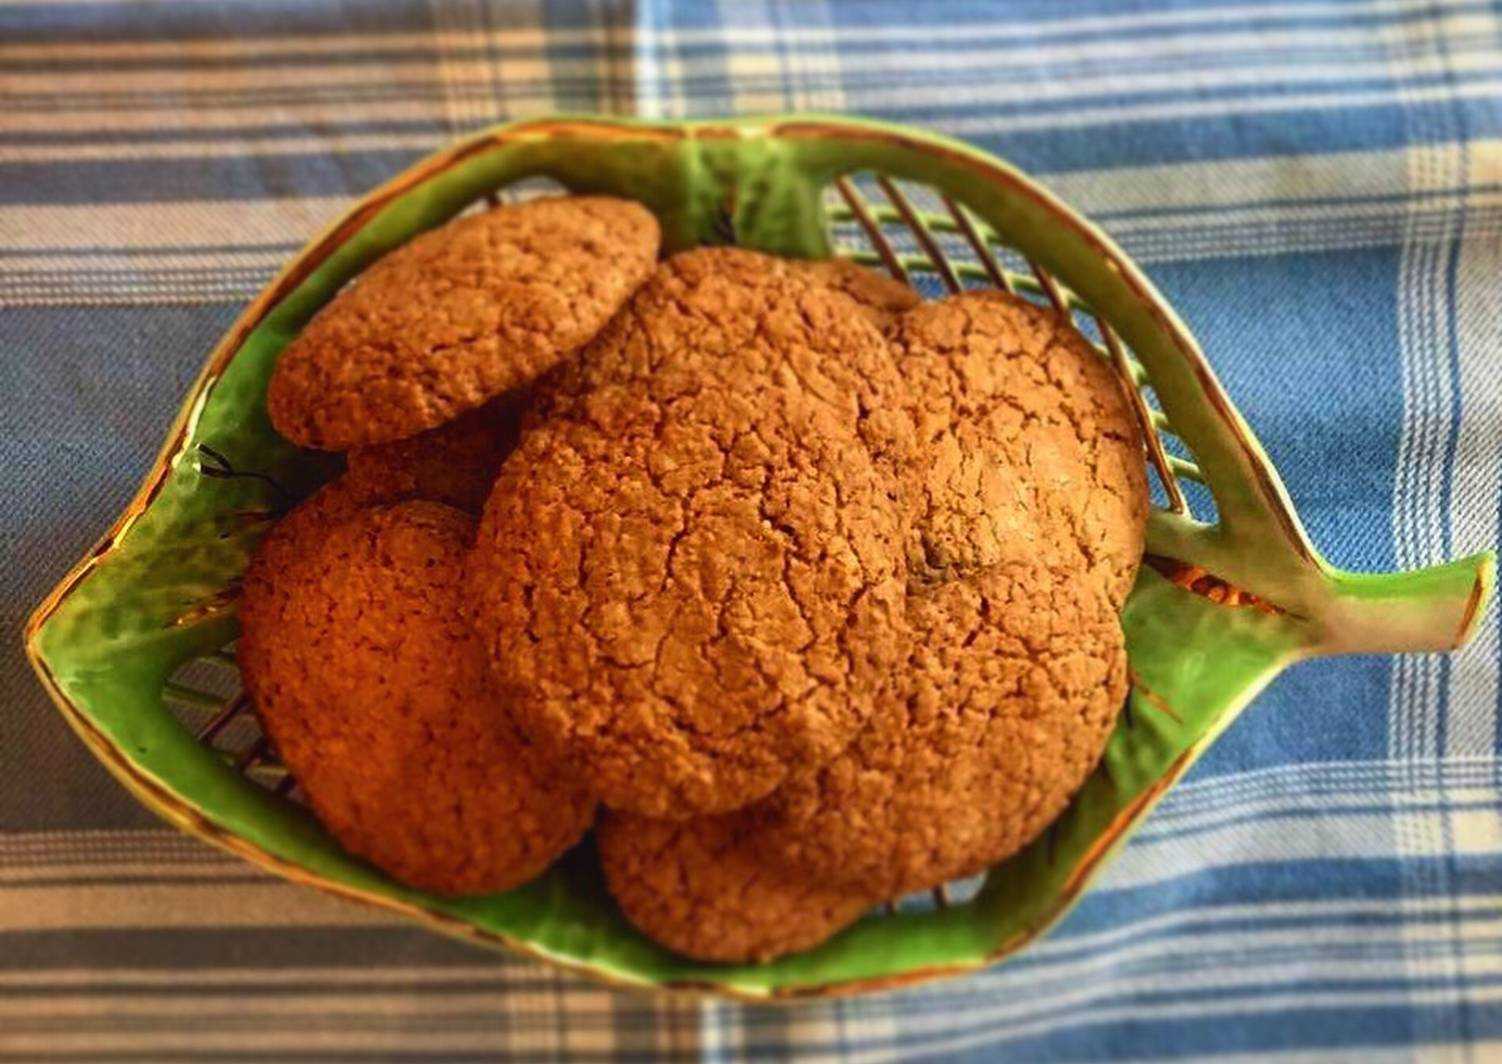 Печенье с орехами - пошаговые рецепты приготовления песочного, творожного, шоколадного или овсяного